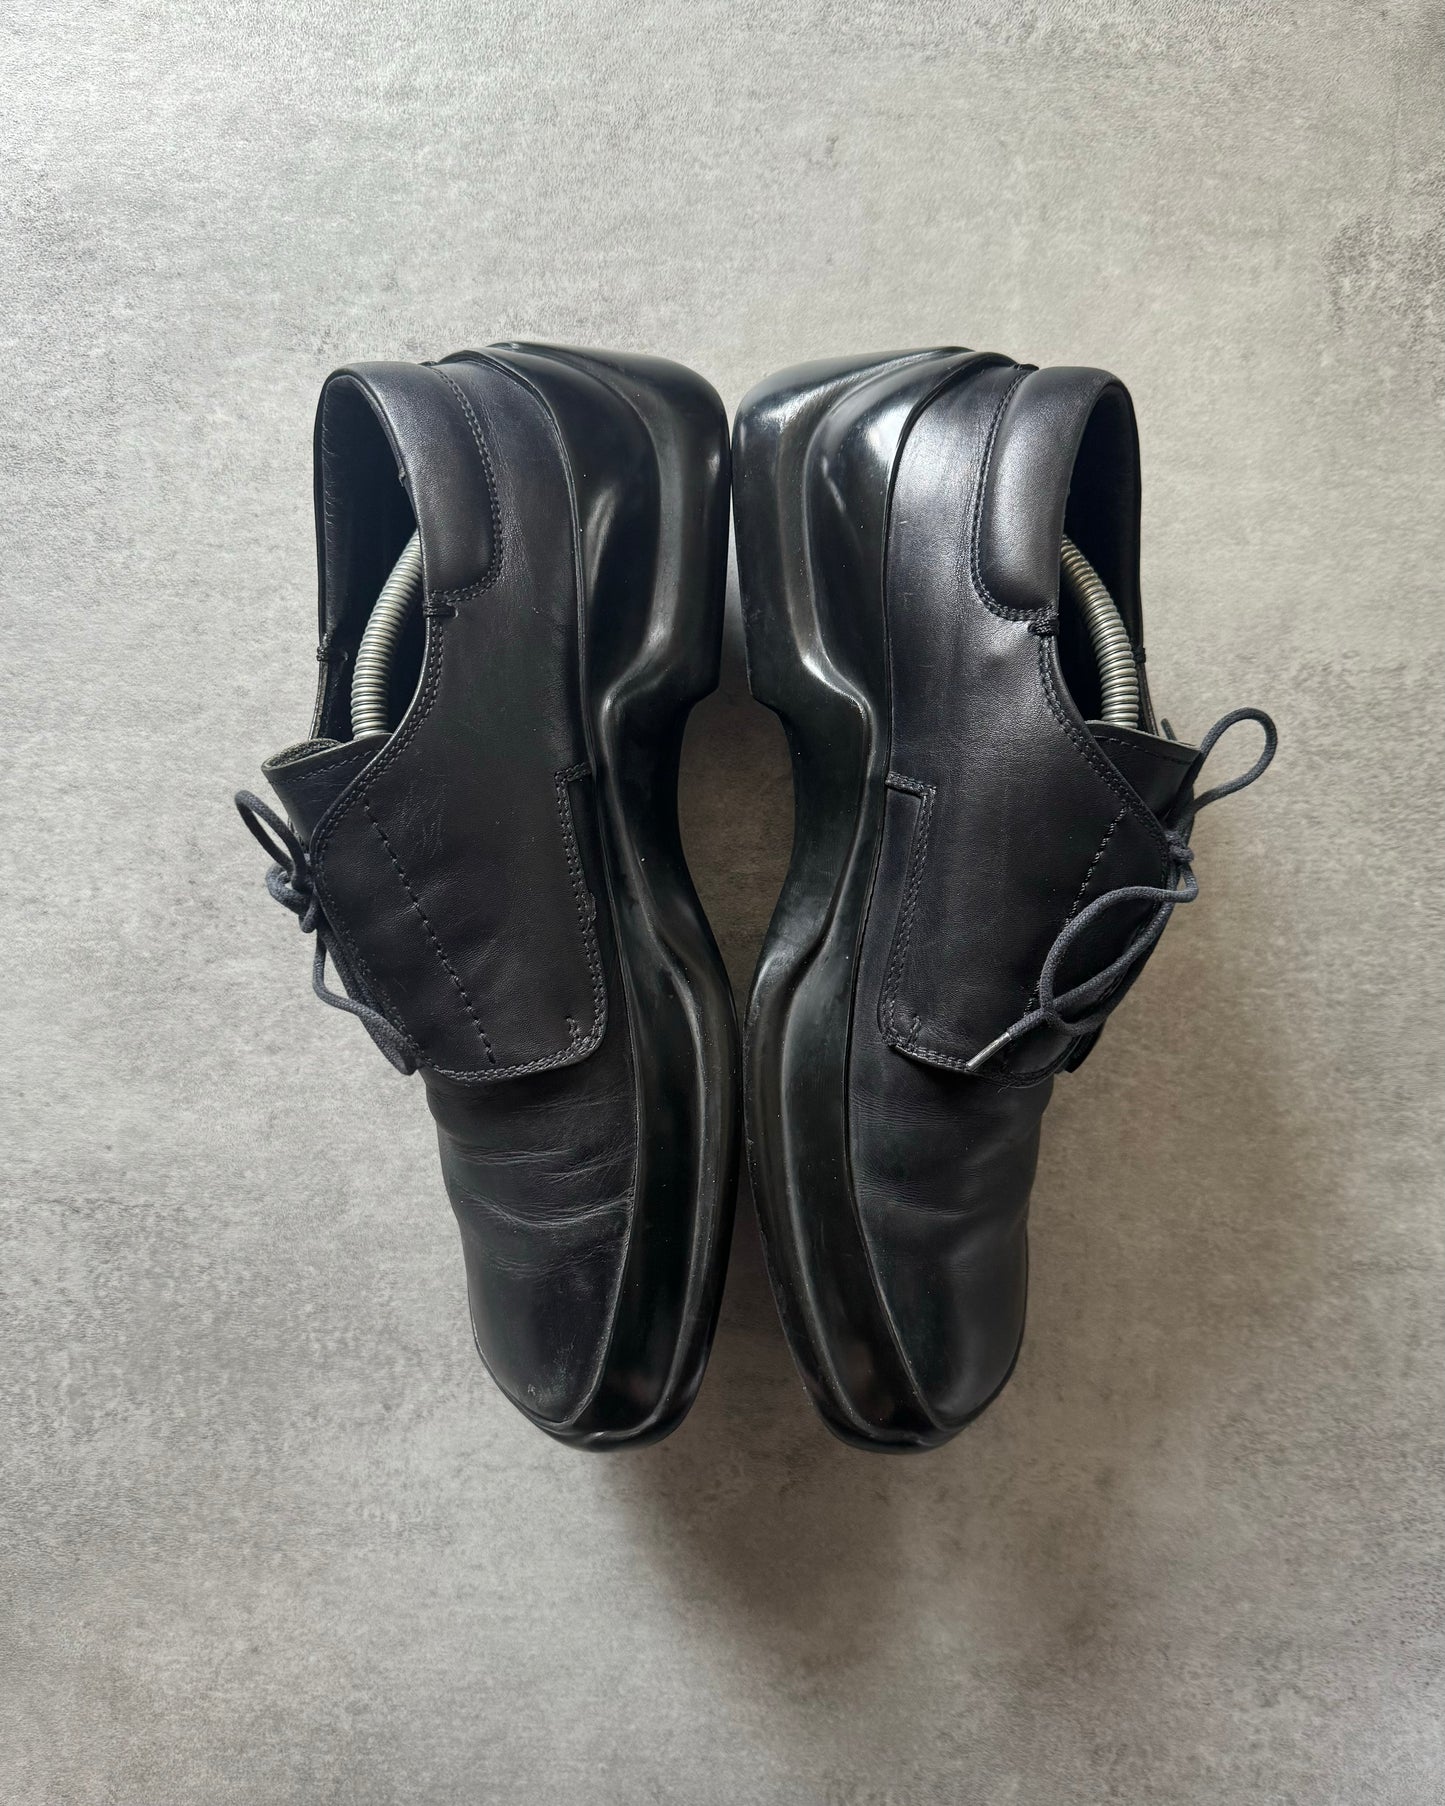 FW1999 Prada Black Low Premium Leather Boots (43) - 3